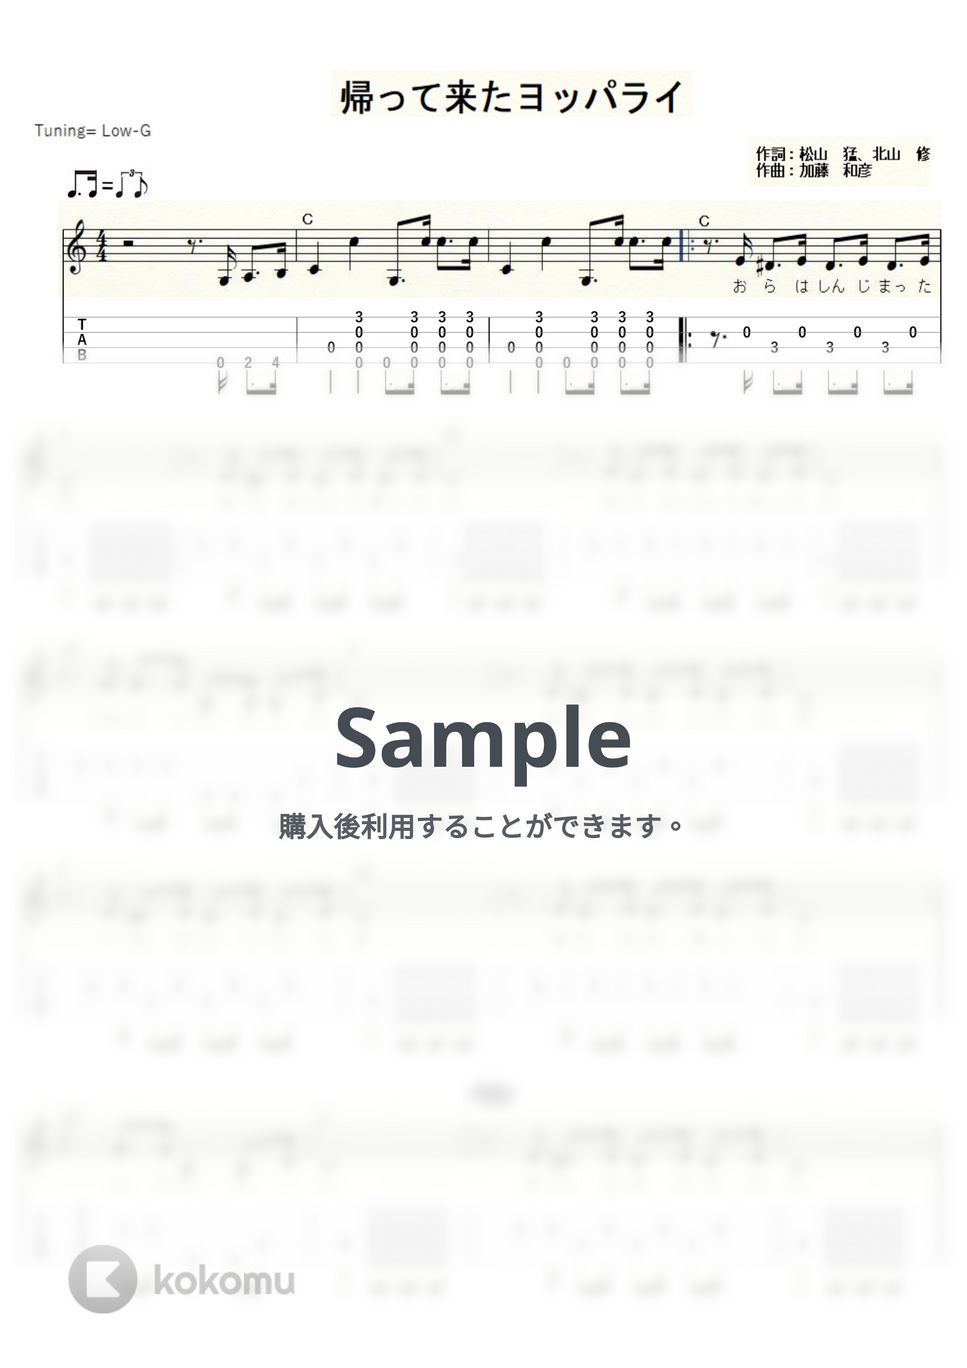 ザ・フォーク・クルセイダーズ - 帰って来たヨッパライ (ｳｸﾚﾚｿﾛ/Low-G/中級) by ukulelepapa